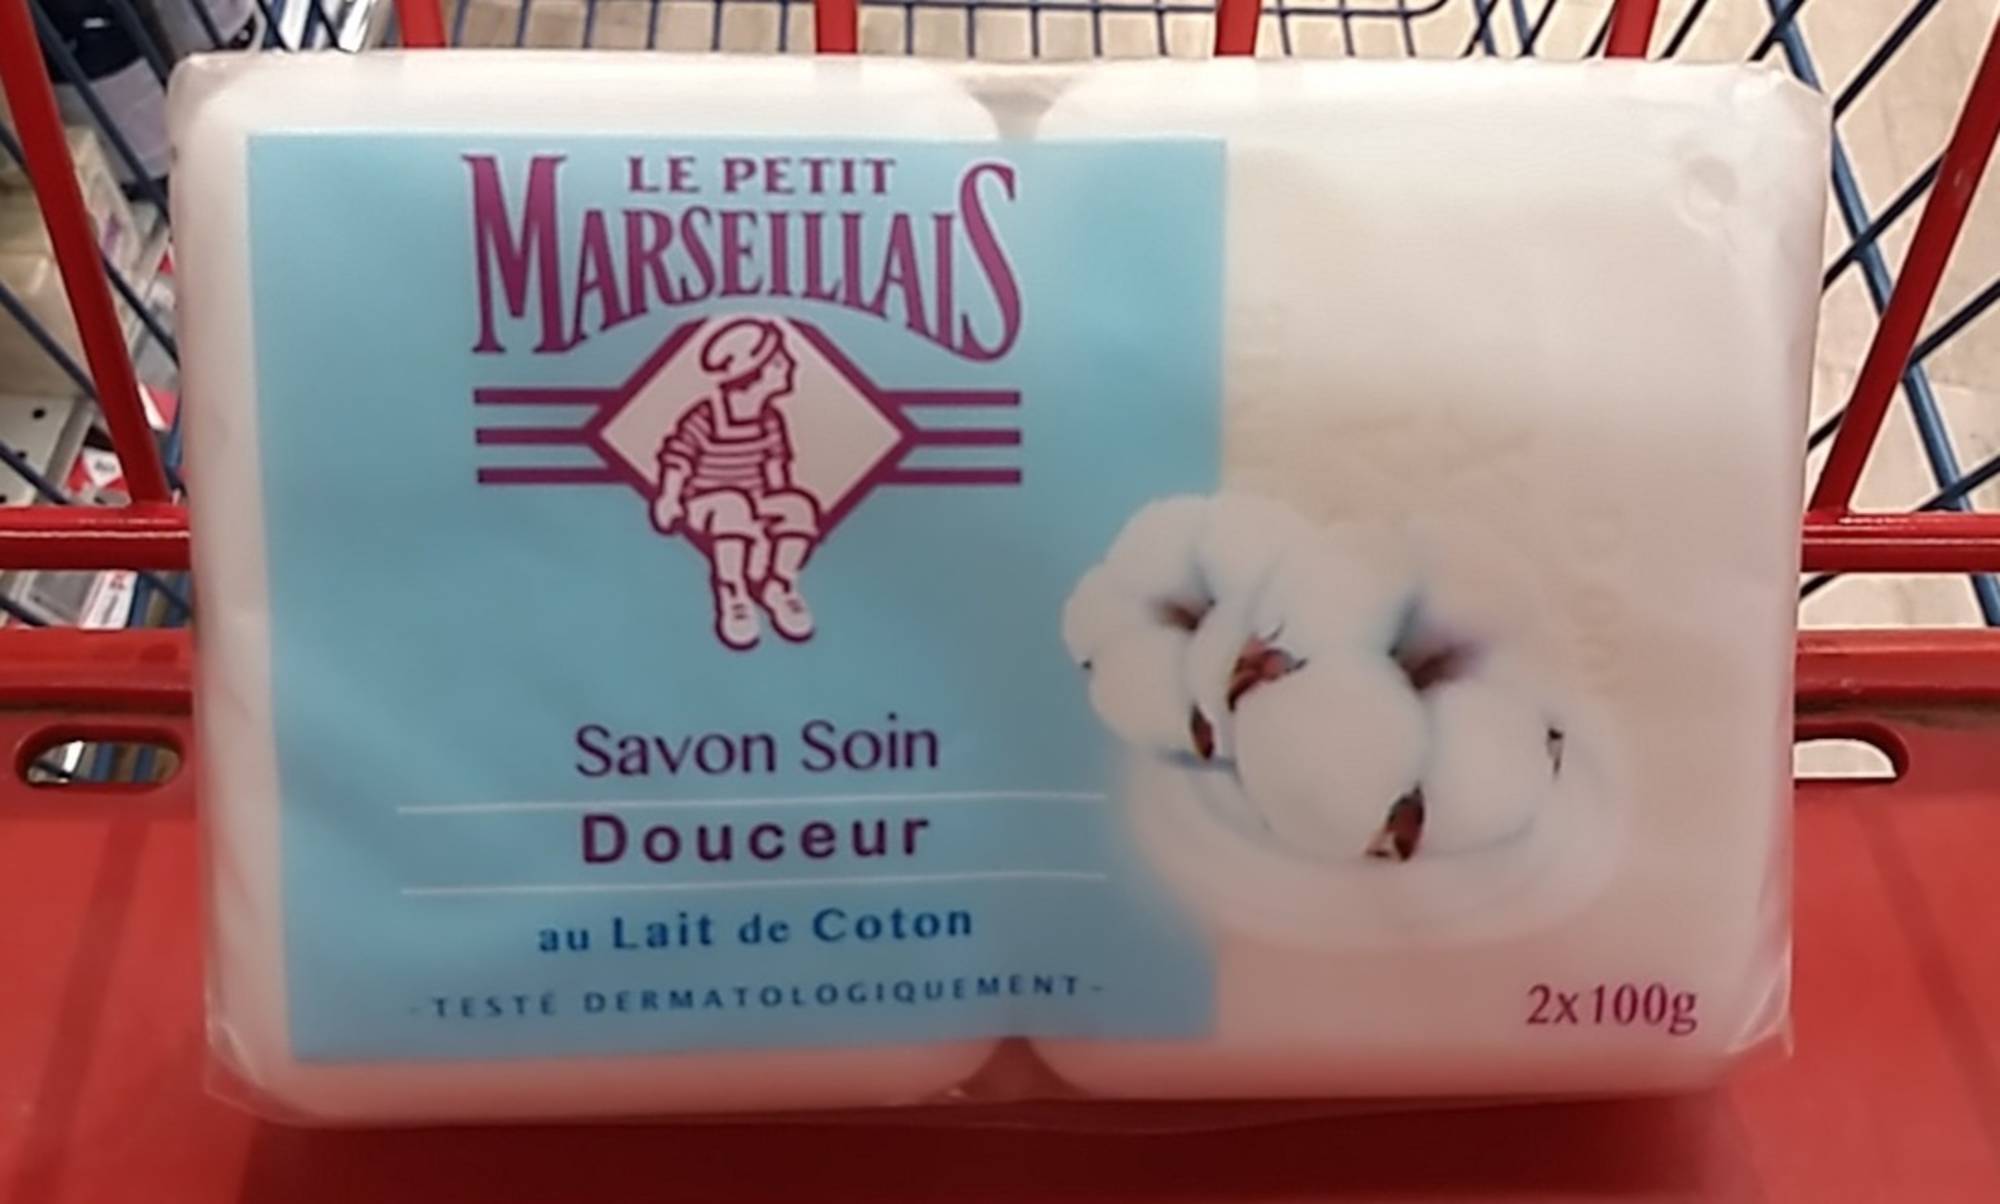 LE PETIT MARSEILLAIS - Savon soin douceur au lait de coton